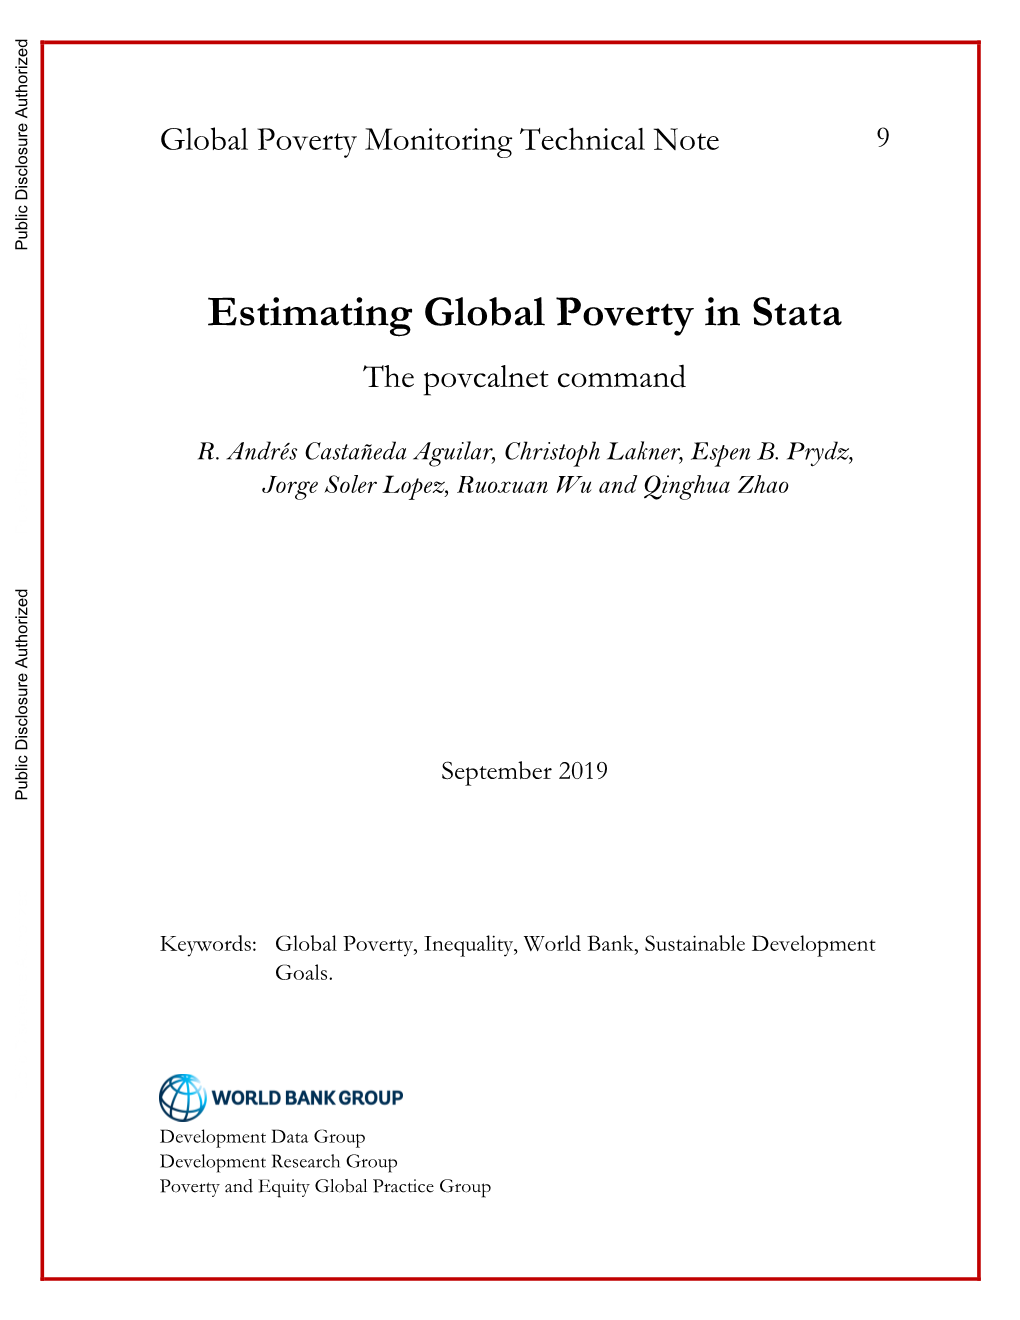 Estimating Global Poverty in Stata